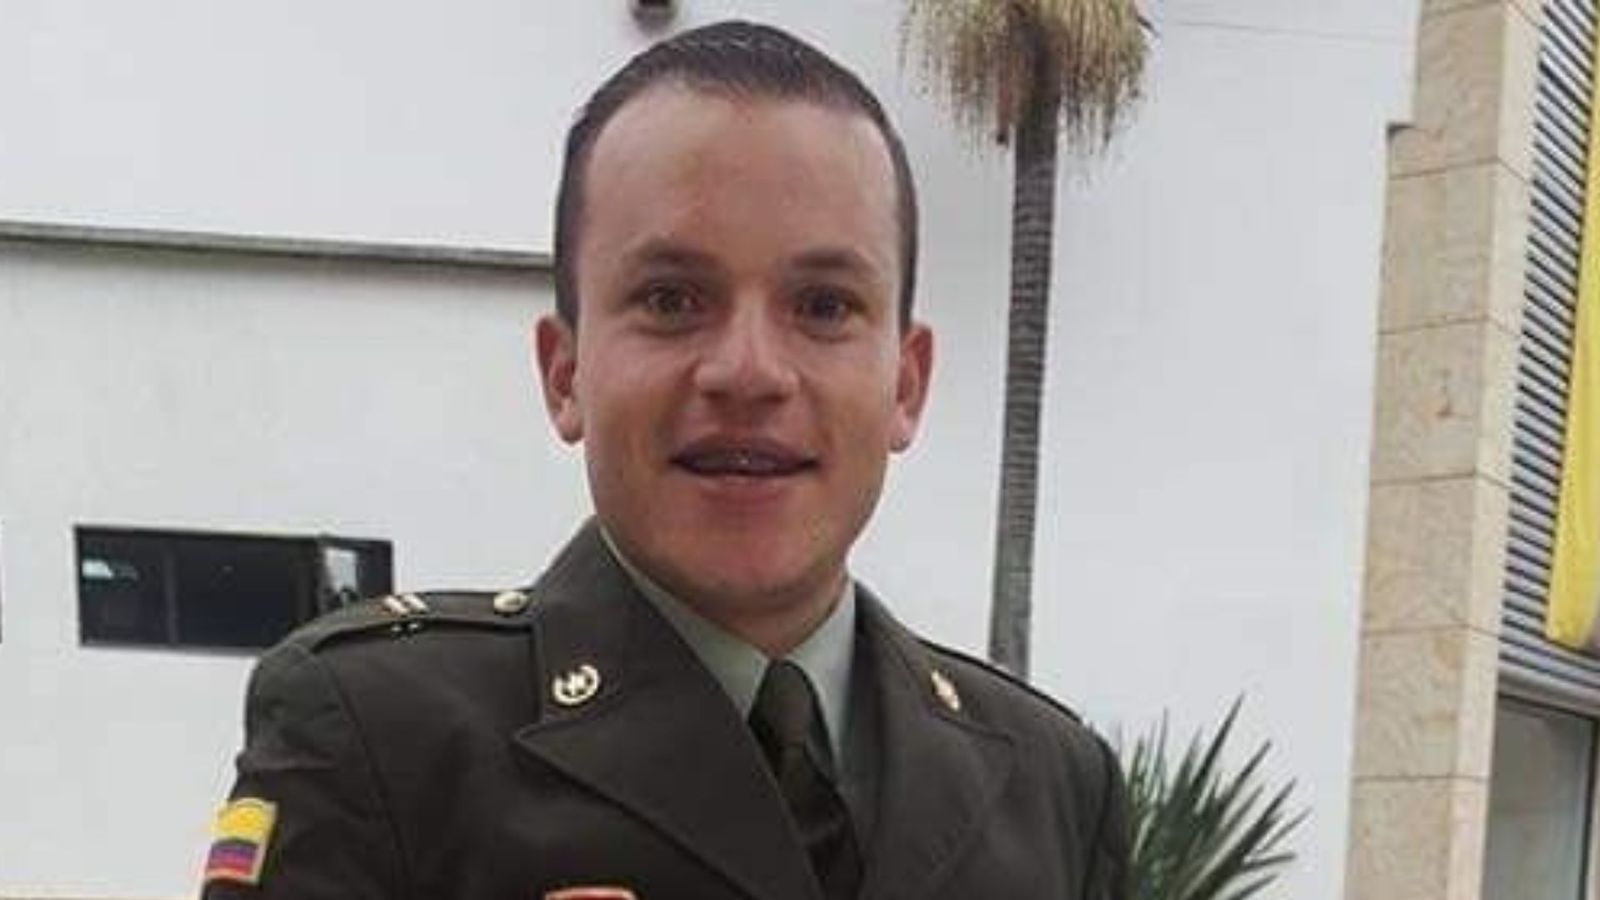 Hoy hace un mes desapareció el oficial boyacense de la Policía, Julián David Gámez ¿qué se sabe del caso? 1